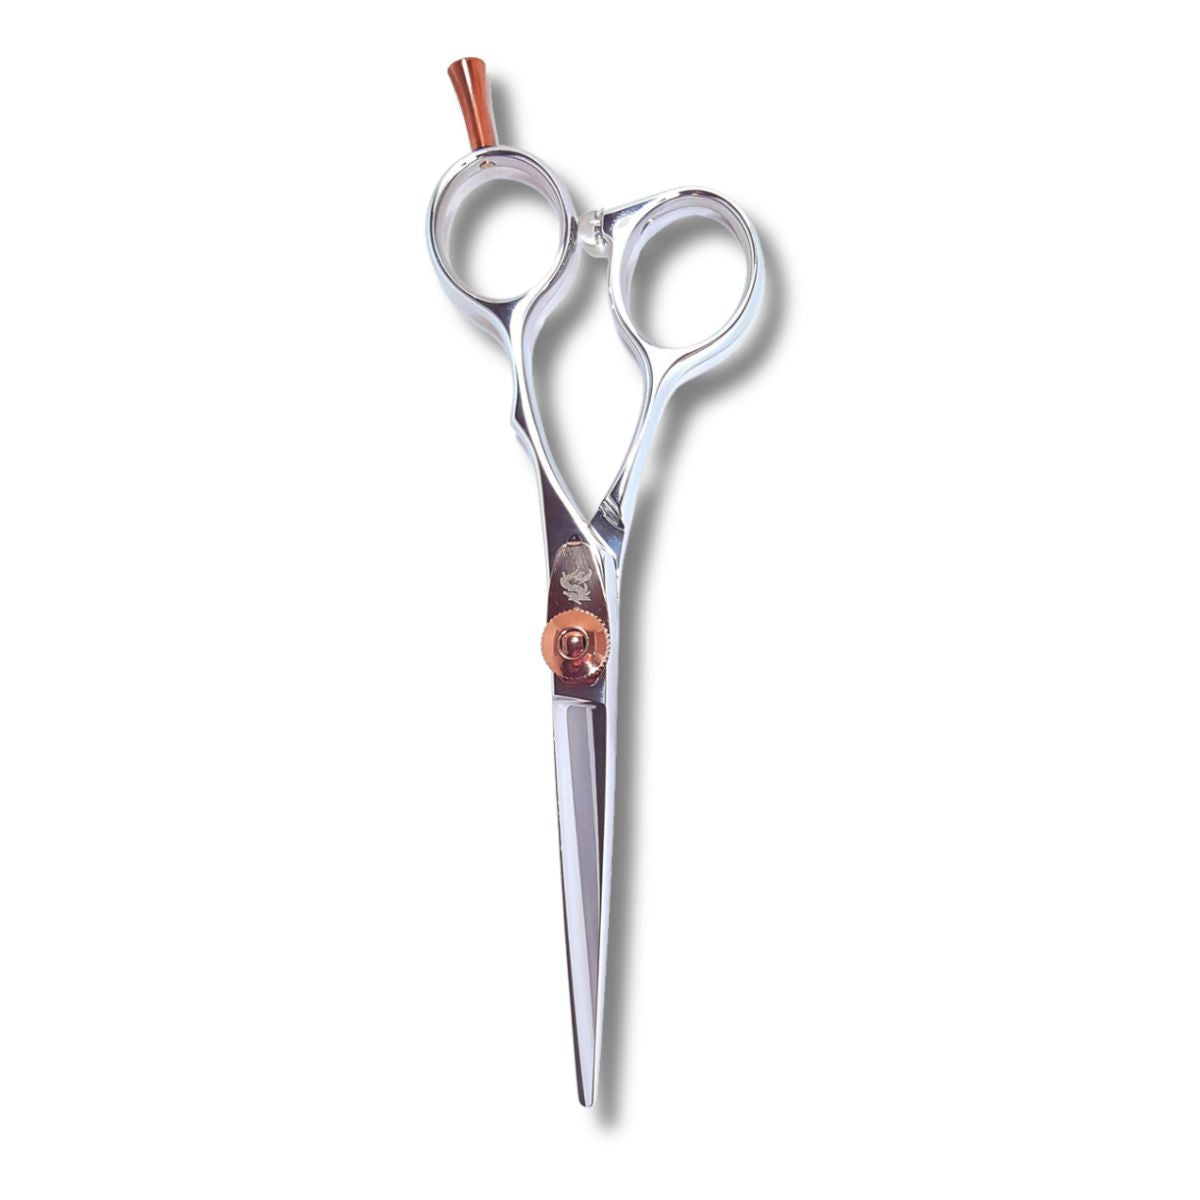 Kamisori Serenity Hair Cutting Scissors